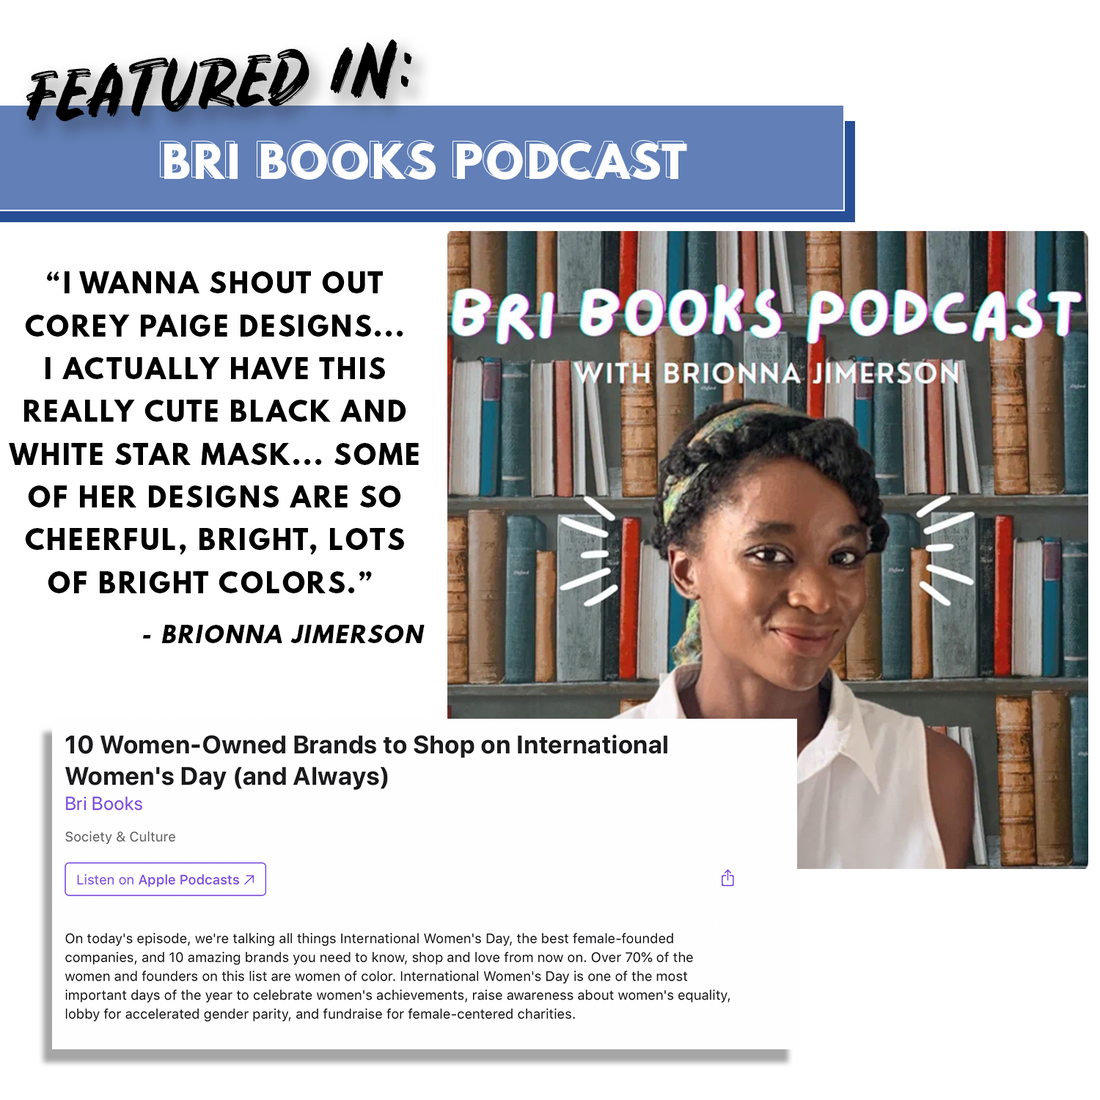 Bri Books Podcast with Brionna Jimerson